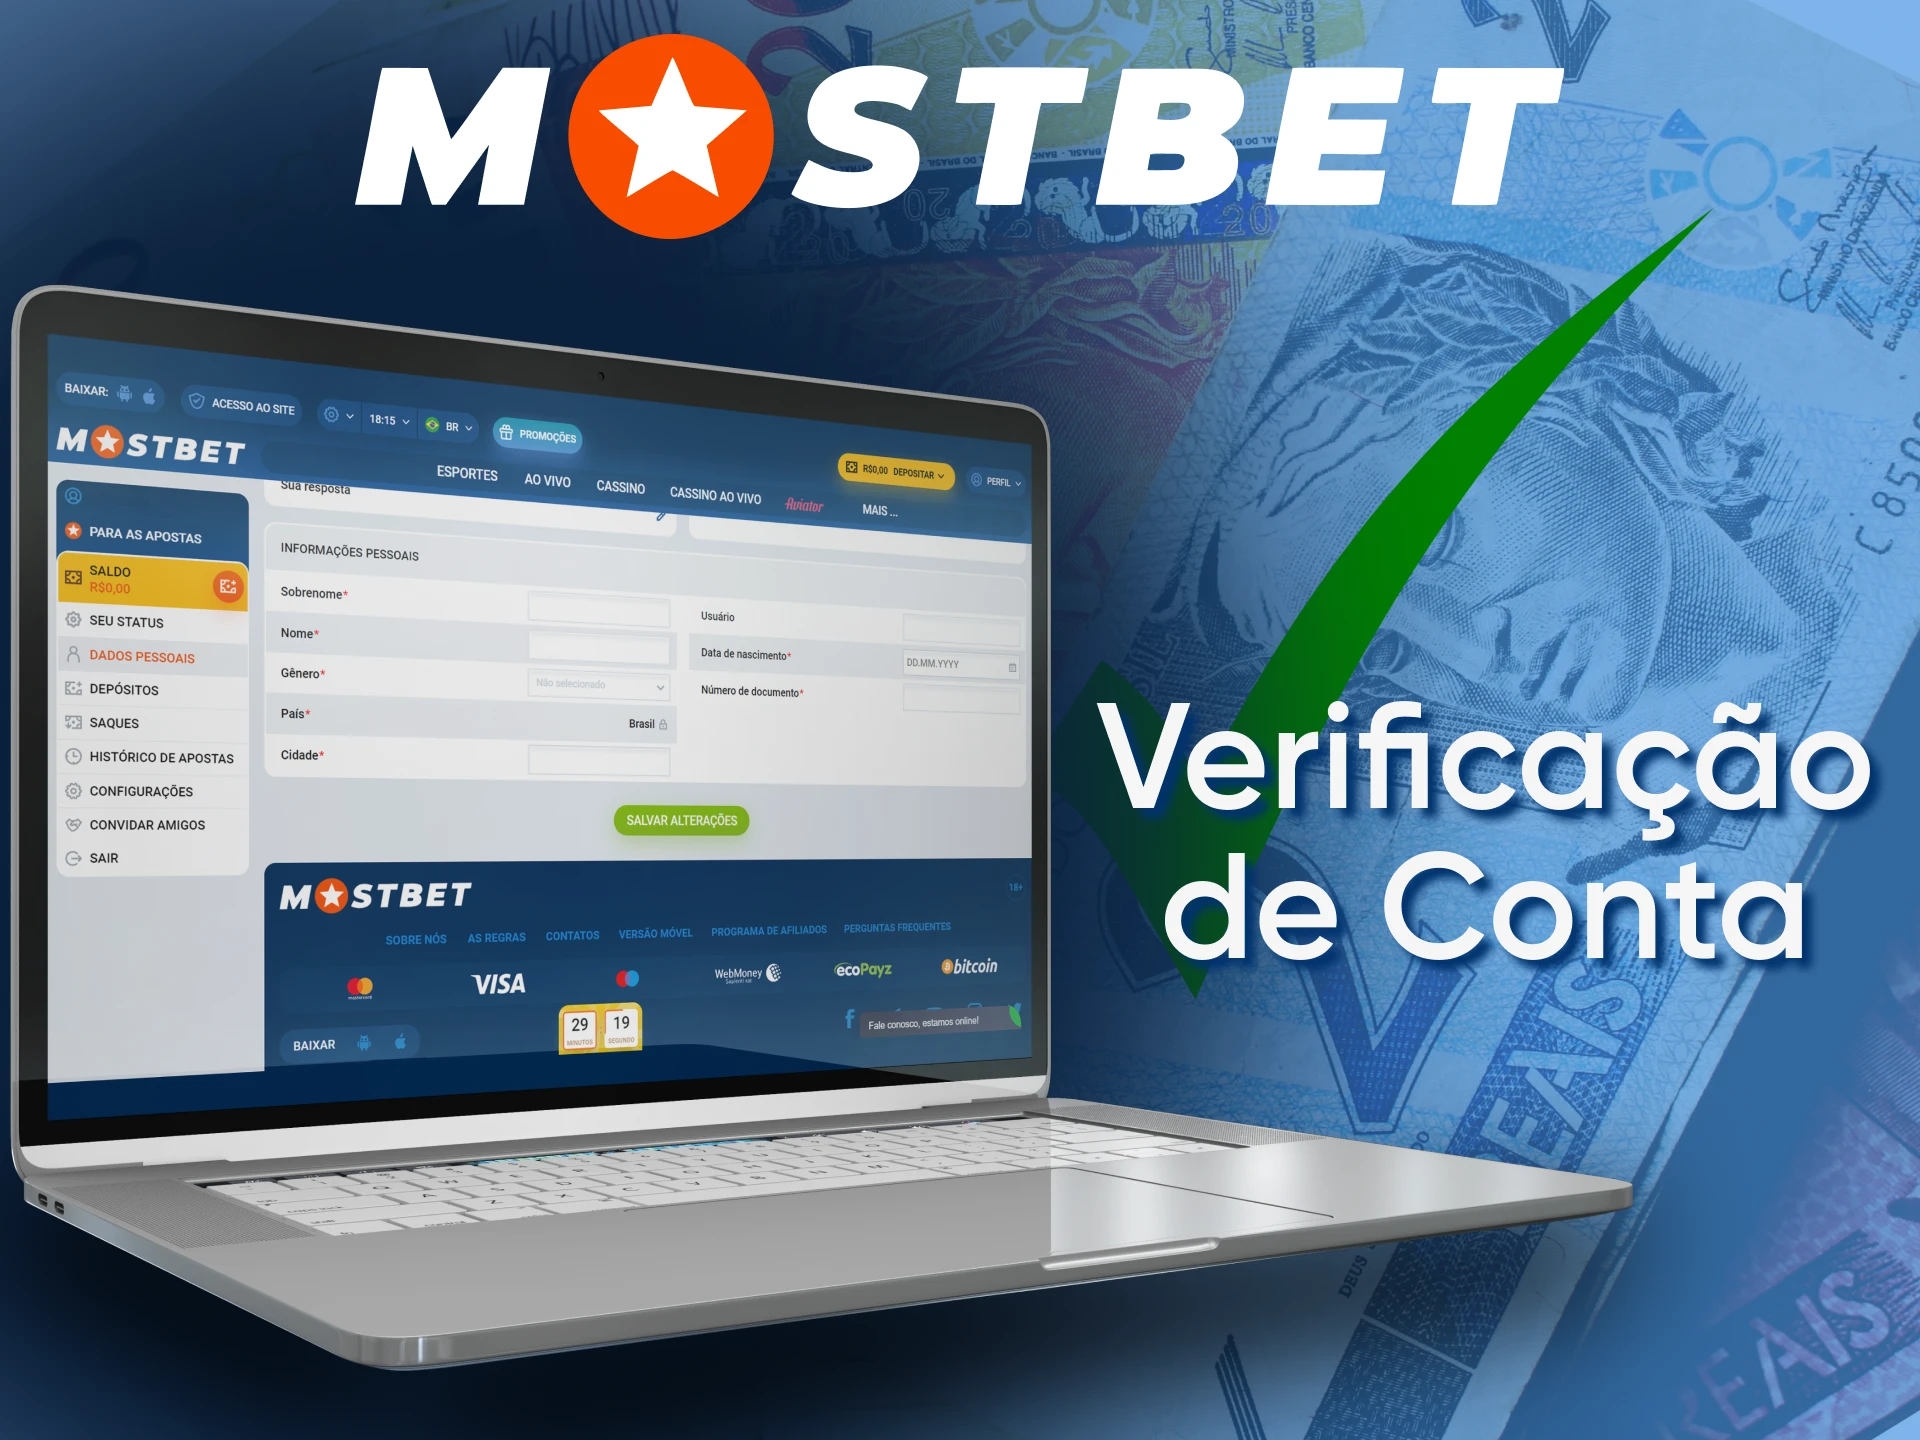 Para retirar dinheiro da Mostbet, você precisa passar pelo procedimento de verificação.